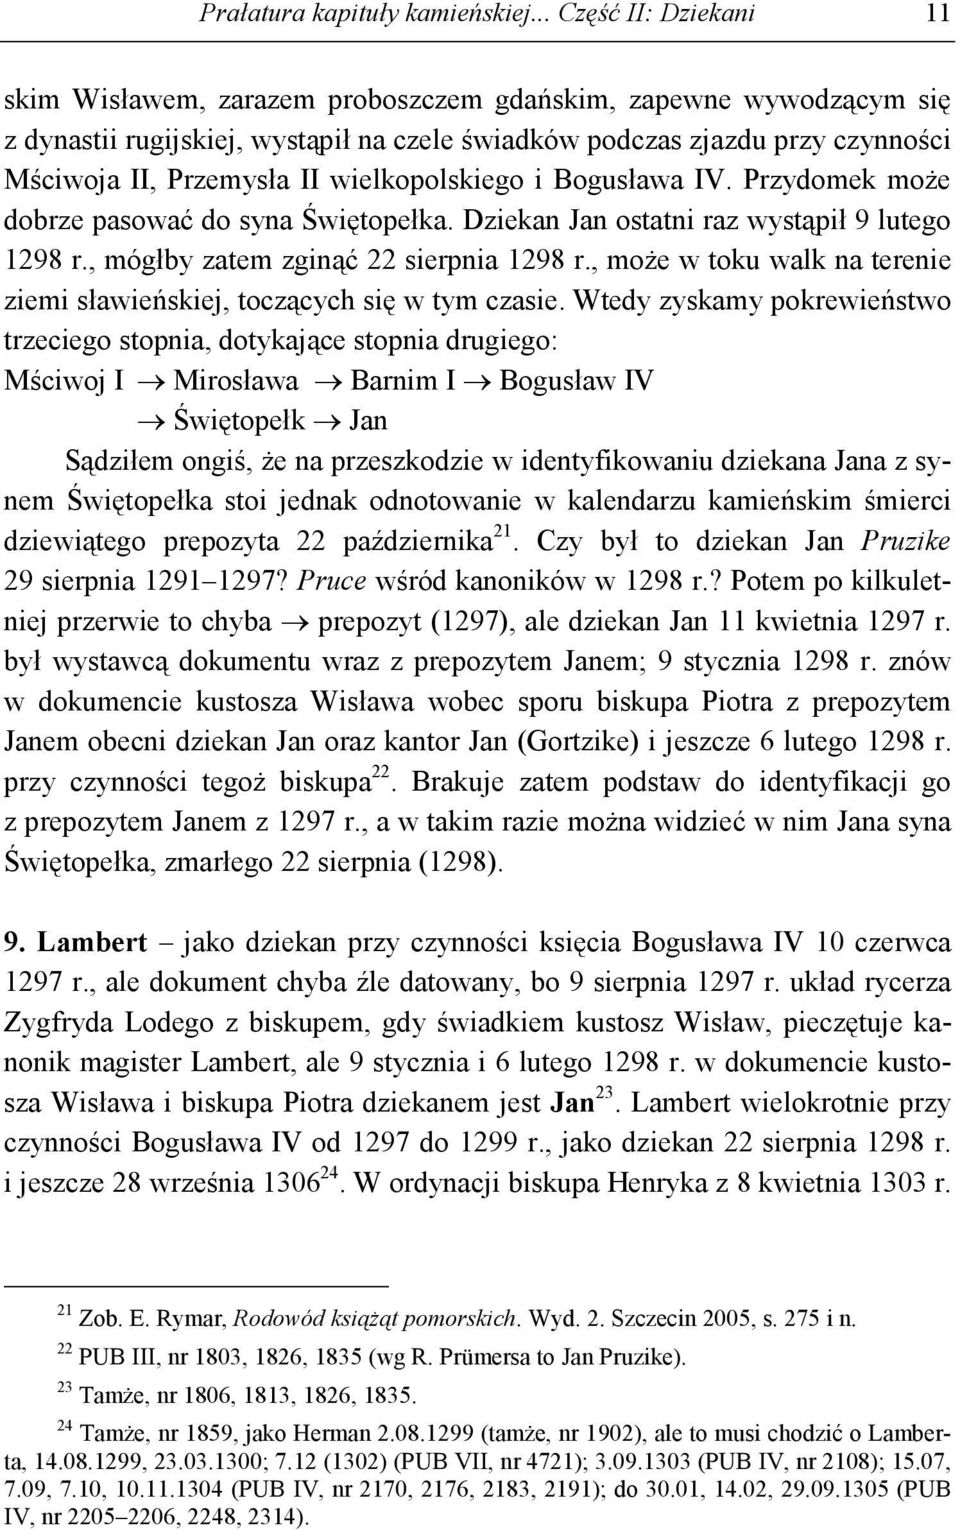 wielkopolskiego i Bogusława IV. Przydomek moŝe dobrze pasować do syna Świętopełka. Dziekan Jan ostatni raz wystąpił 9 lutego 1298 r., mógłby zatem zginąć 22 sierpnia 1298 r.